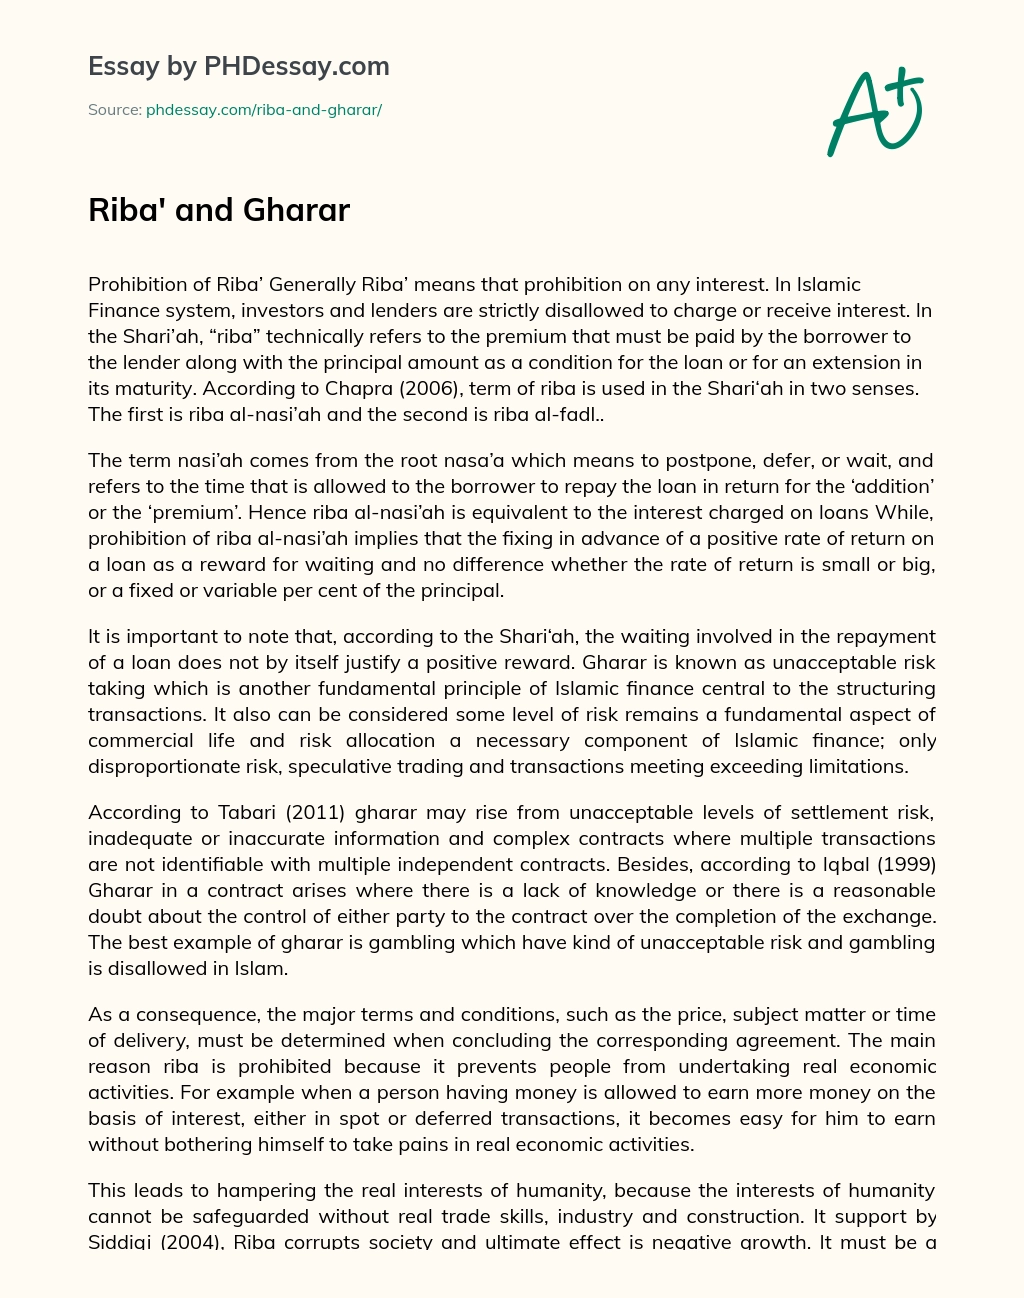 Riba’ and Gharar essay